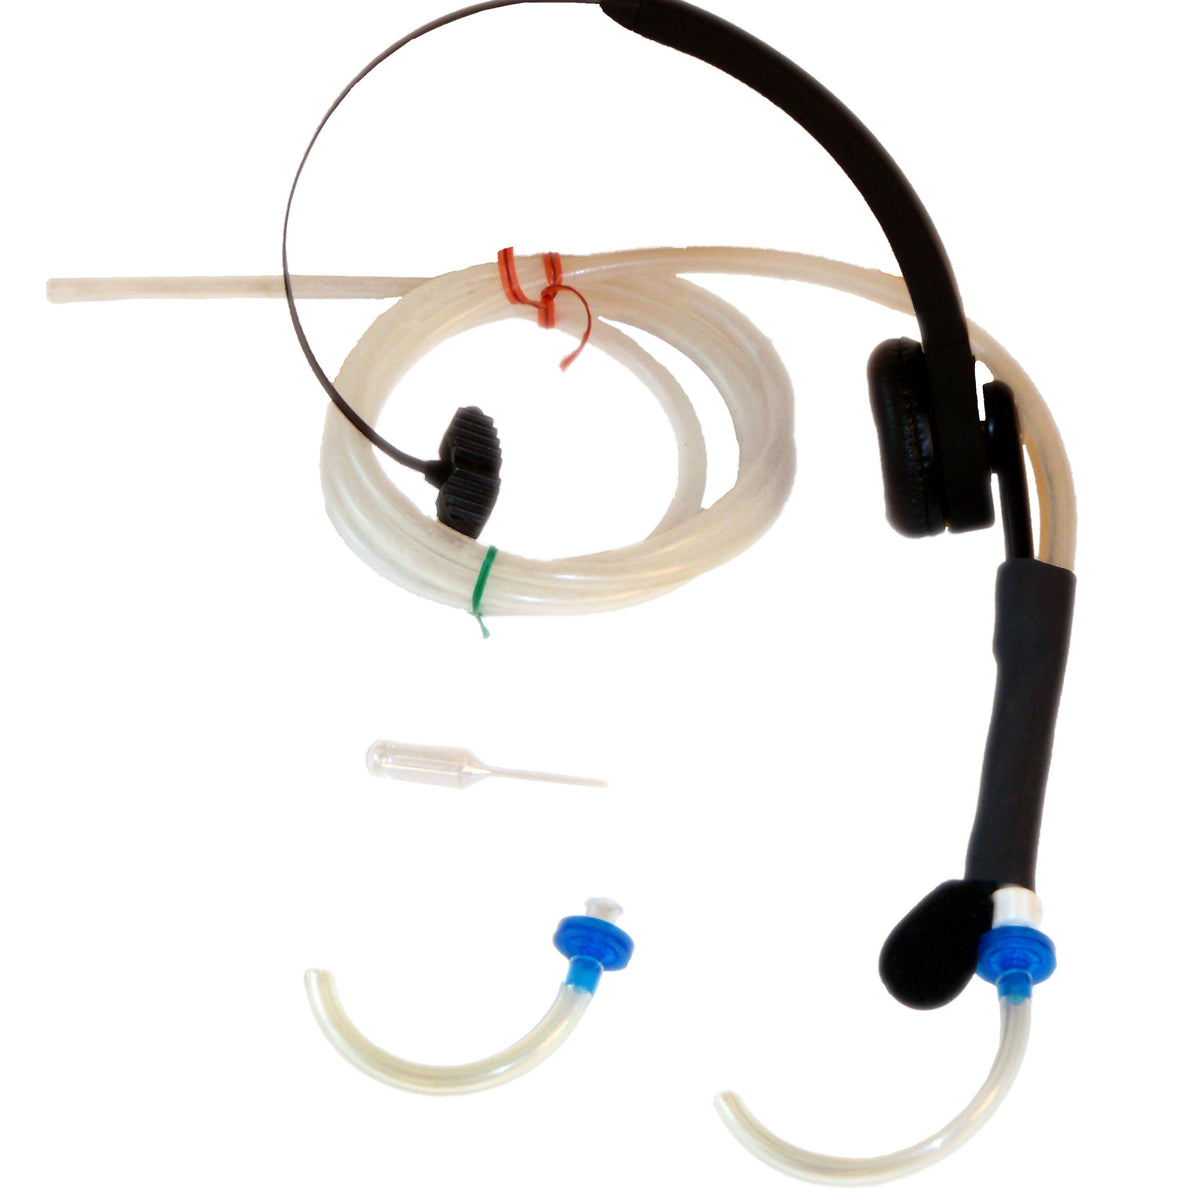 Οι διακόπτες SIP-N-Puff σε ακουστικά ή Flexarm